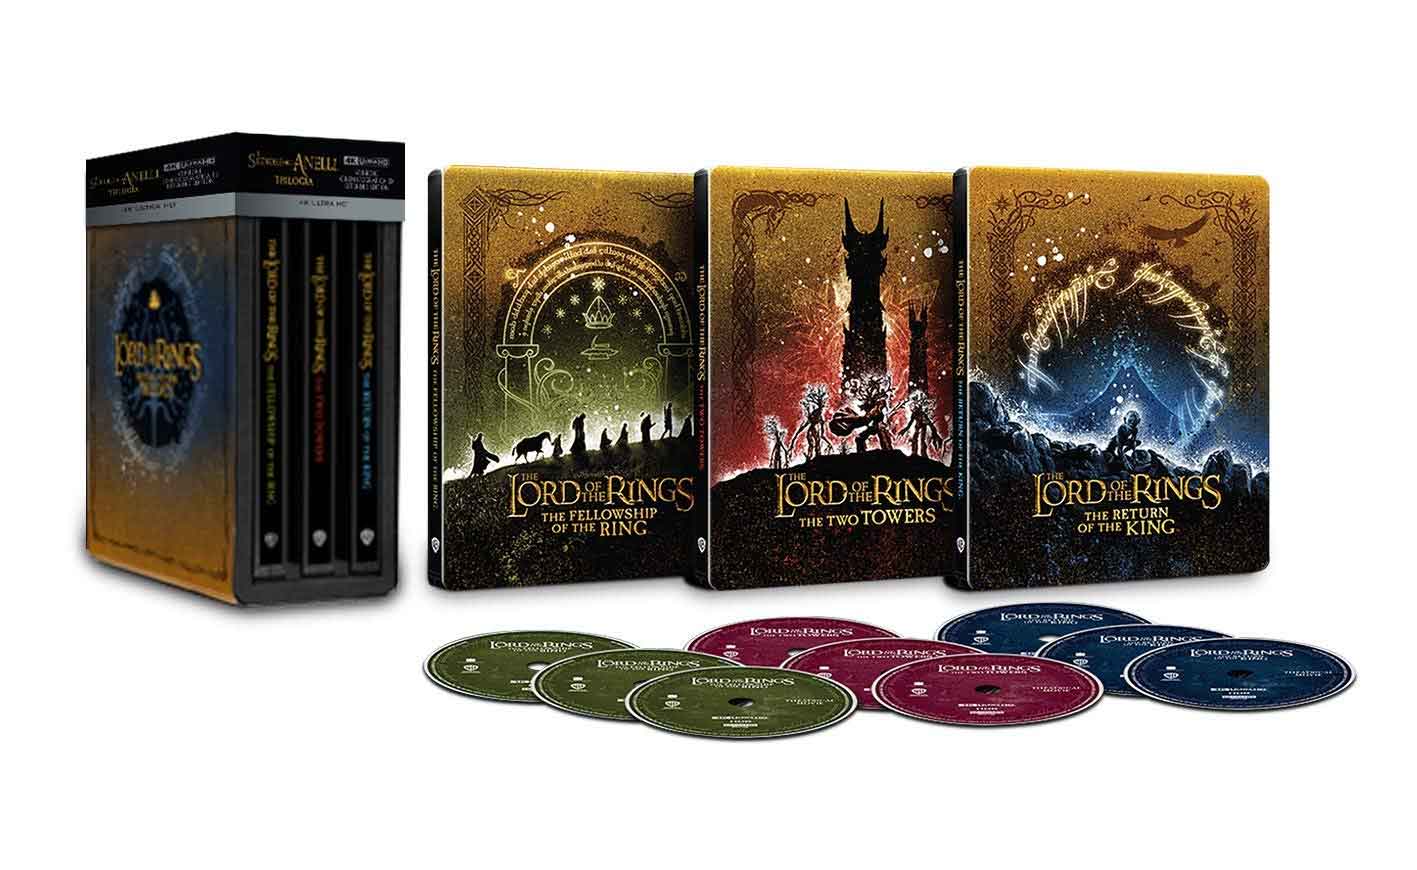 Amazon Prime Day: le migliori offerte Blu-ray e DVD Il Signore degli Anelli trilogia Steelbook 4K